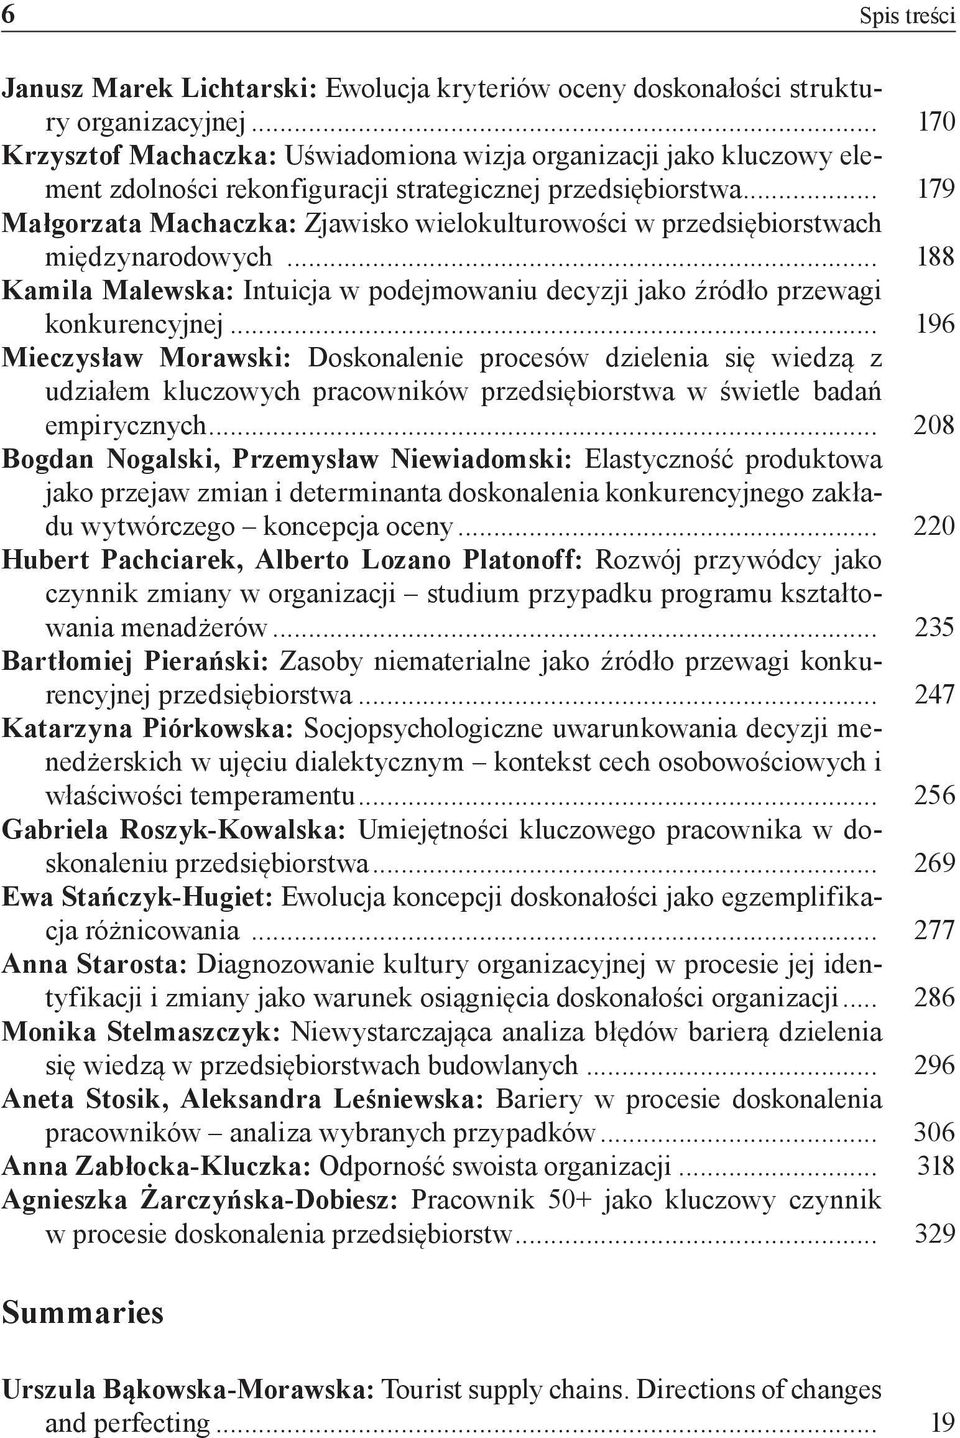 .. 179 Małgorzata Machaczka: Zjawisko wielokulturowości w przedsiębiorstwach międzynarodowych... 188 Kamila Malewska: Intuicja w podejmowaniu decyzji jako źródło przewagi konkurencyjnej.